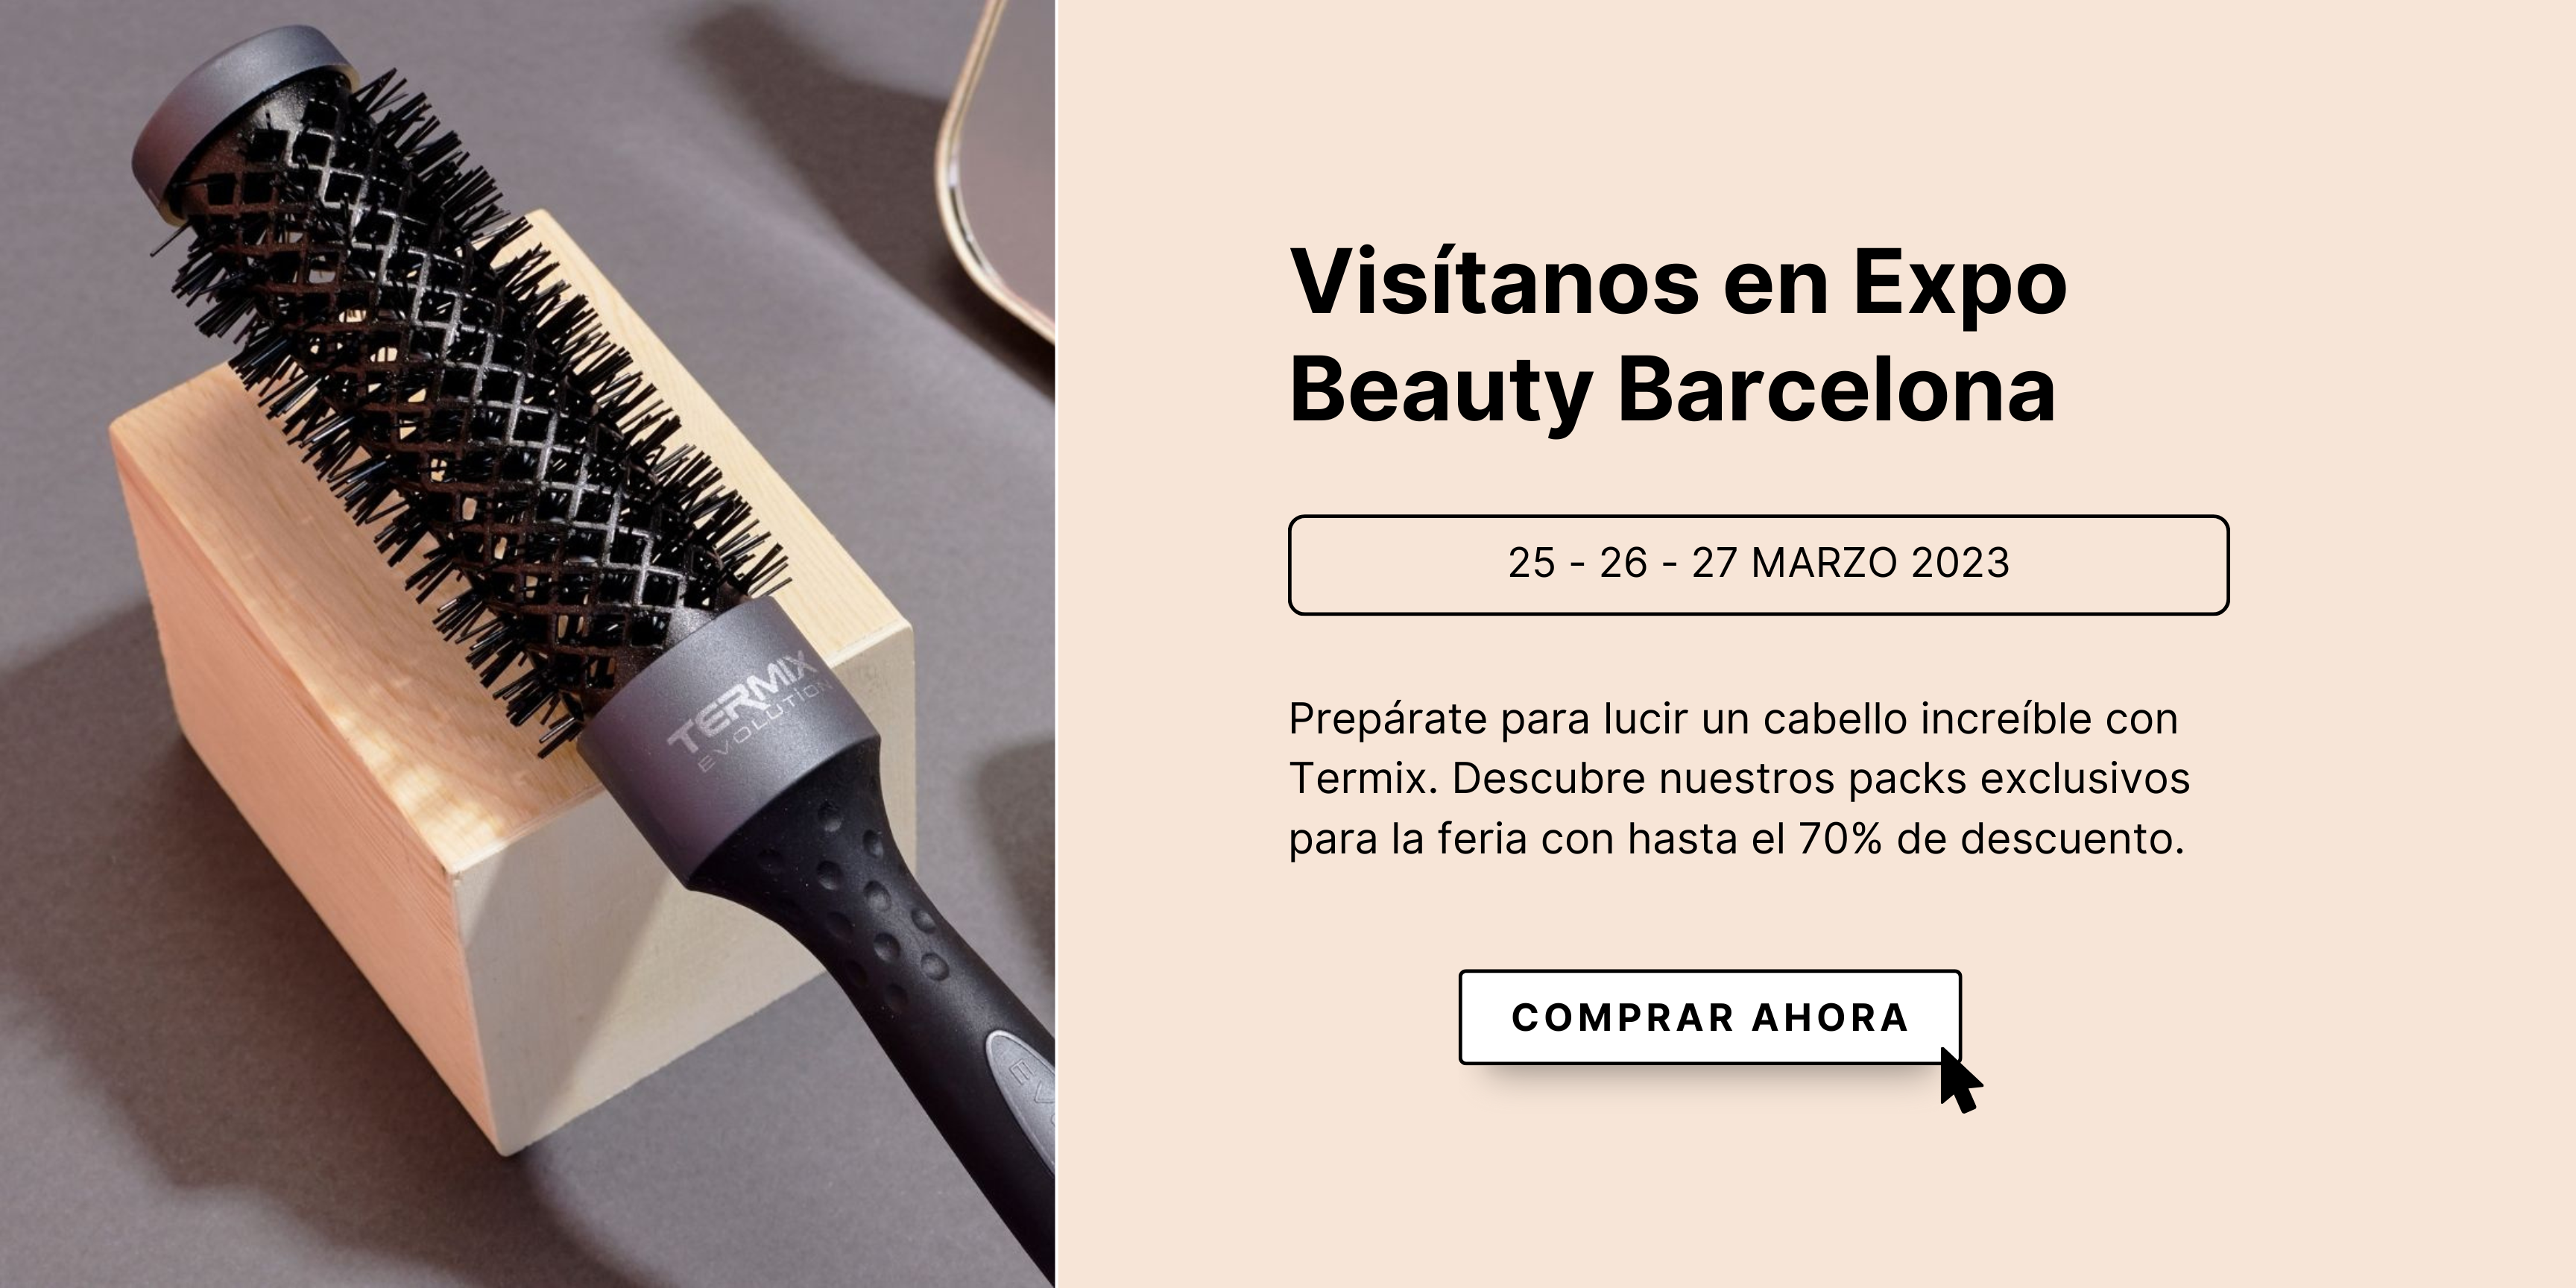 -Aprovecha-los-descuentos-de-hasta-el-70-en-Expo-Beauty-Barcelona-